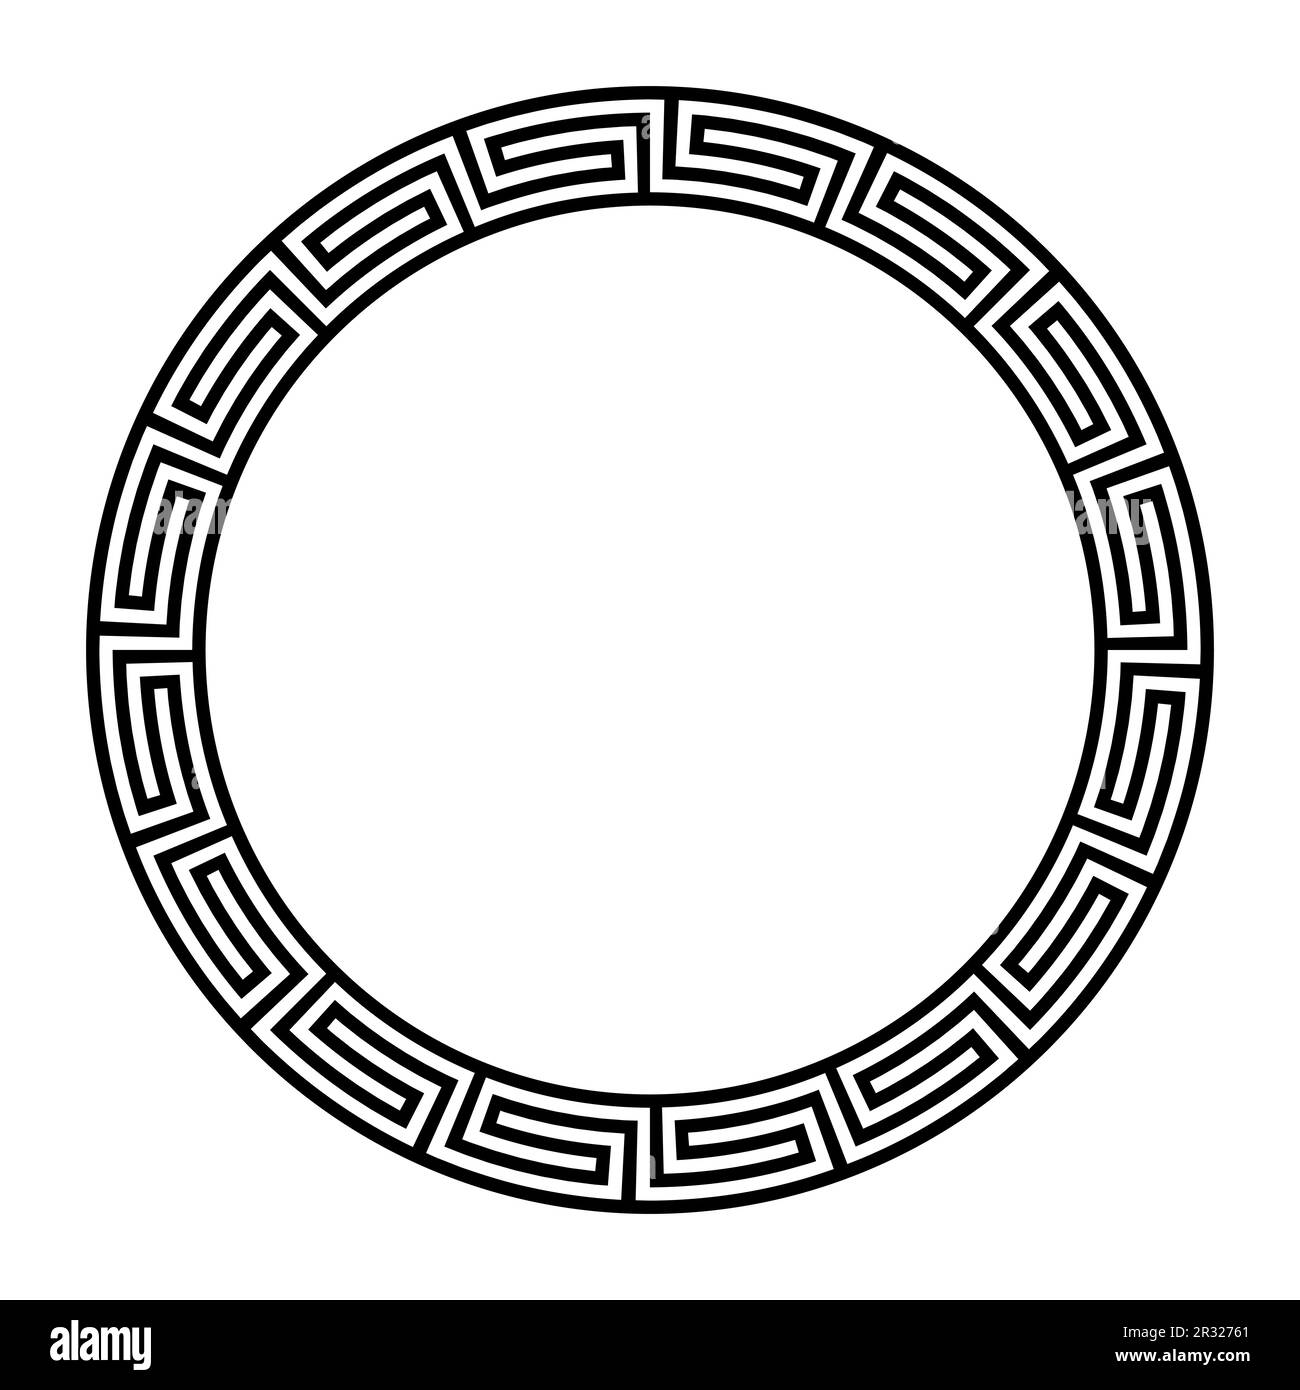 Griechische Fritten-Verzierung, kreisförmiger Rahmen mit nahtlosem Meander-Muster. Ein dekorativer runder Rahmen aus durchgehenden Linien. Stockfoto